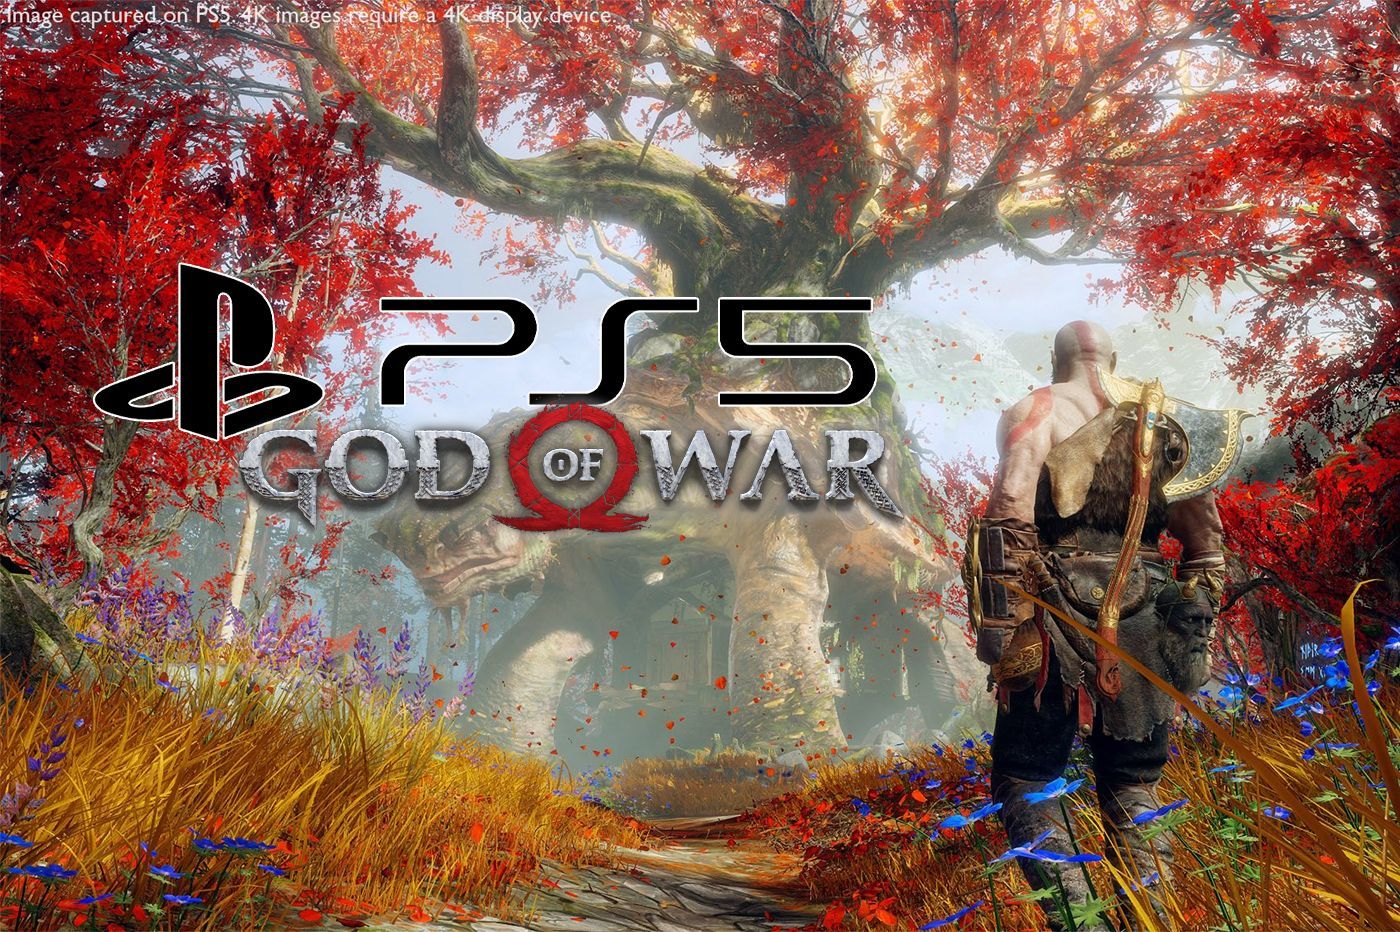 Le patch PS5 de God Of War arrive aujourd’hui. Voilà ce qu’il apporte